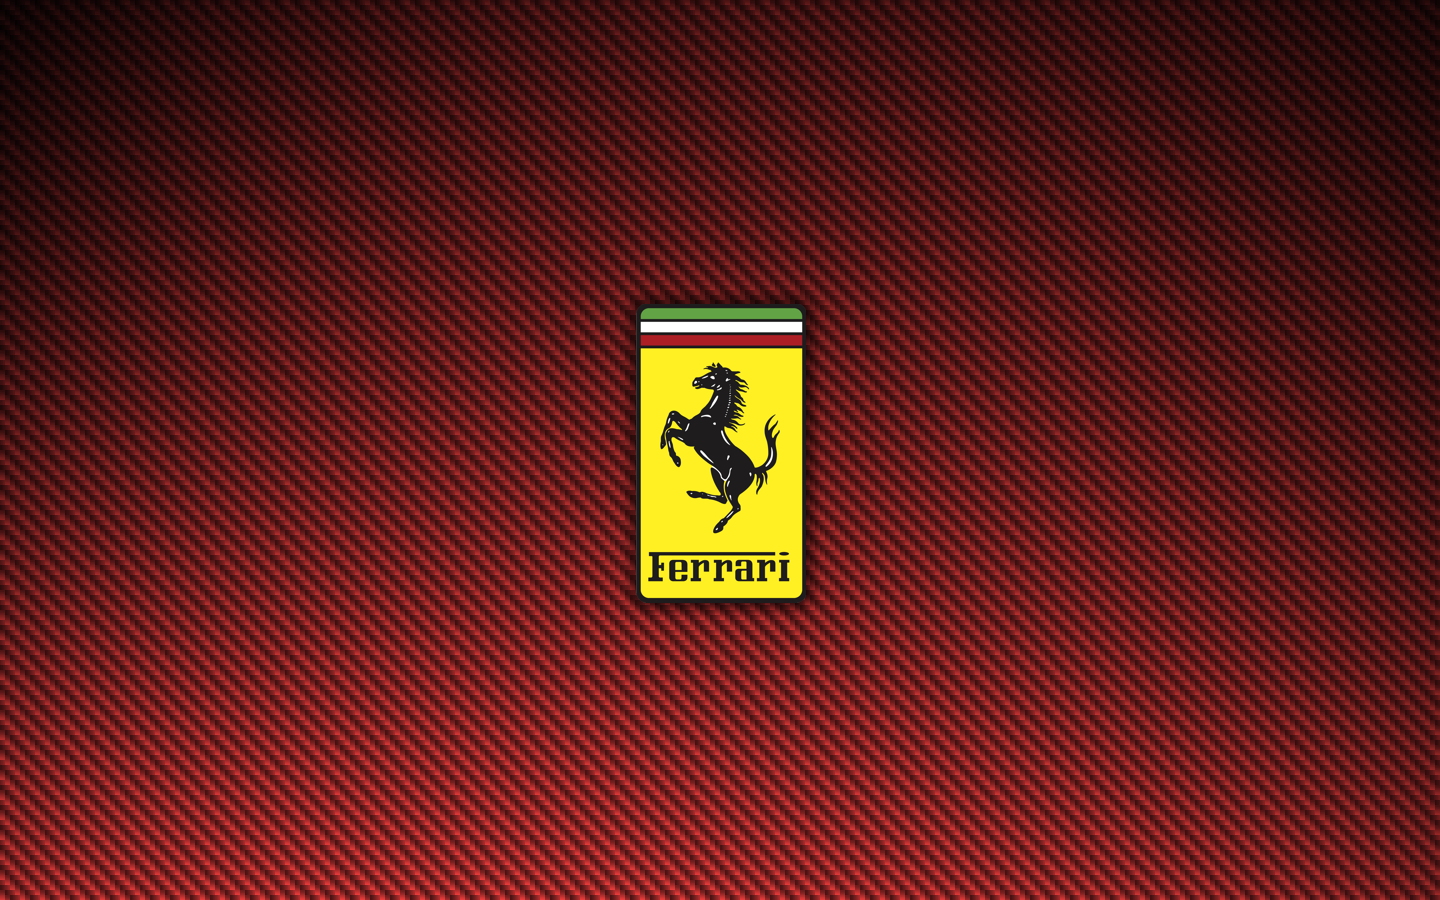 Ferrari Logo Red Carbon Fiber Wallpaper 1440×900 | darelparker.com